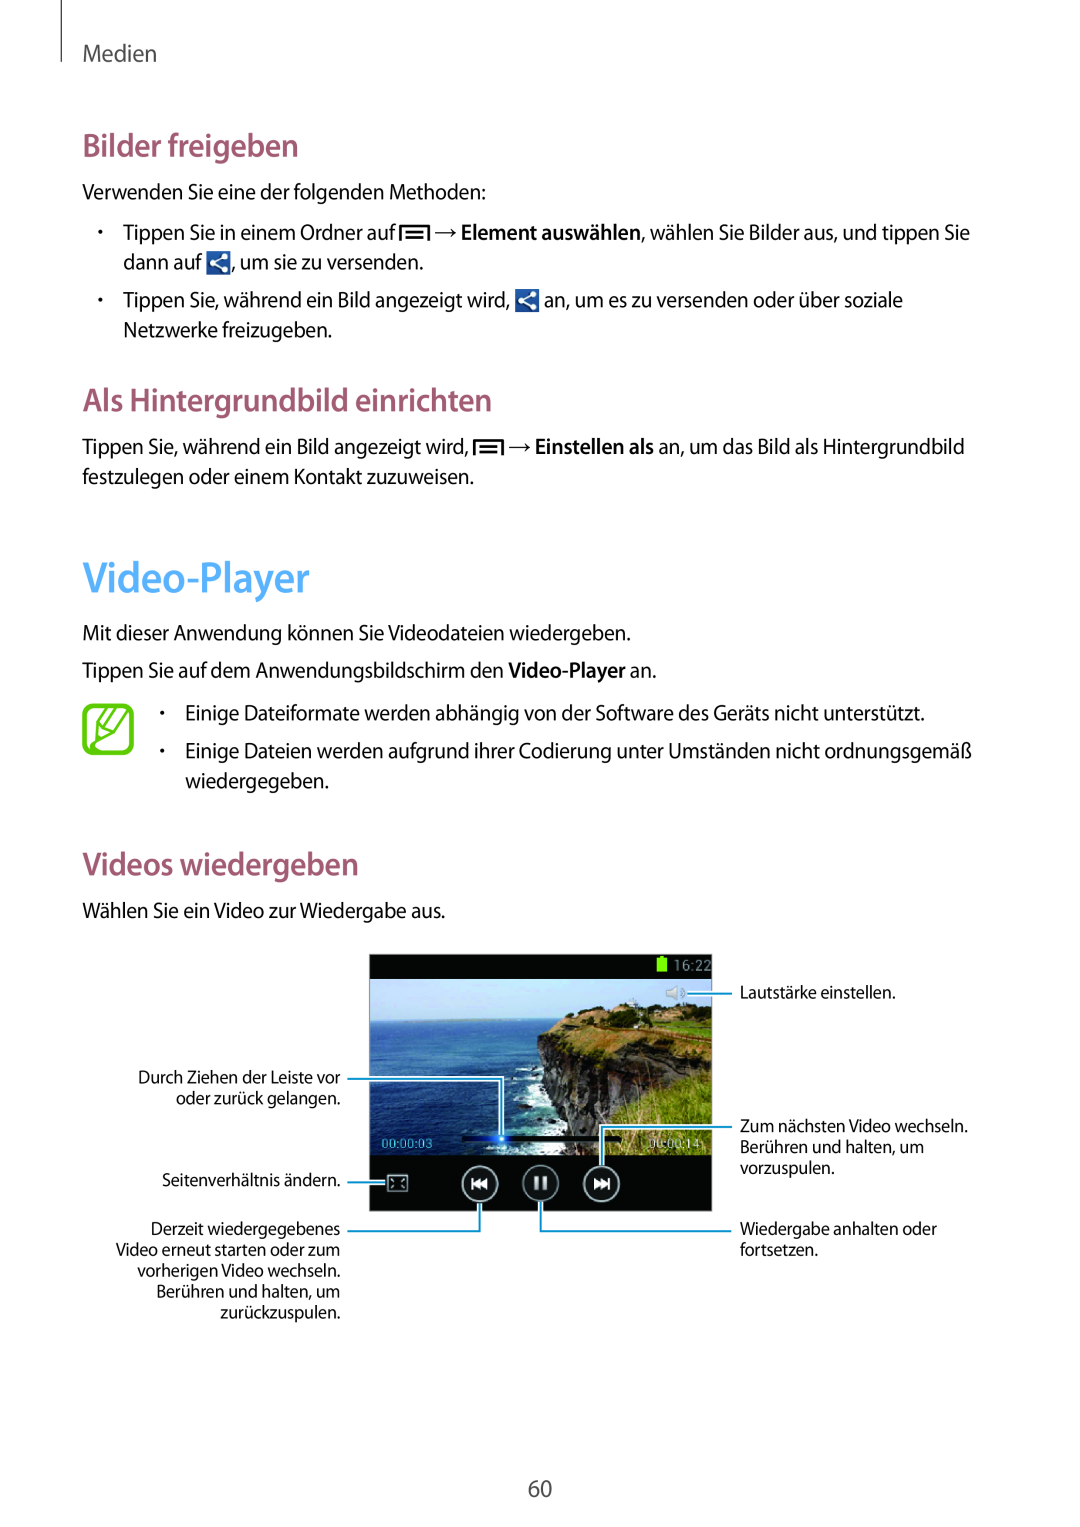 Samsung GT-S5280LKAMEO manual Video-Player, Bilder freigeben, Als Hintergrundbild einrichten, Videos wiedergeben, Medien 